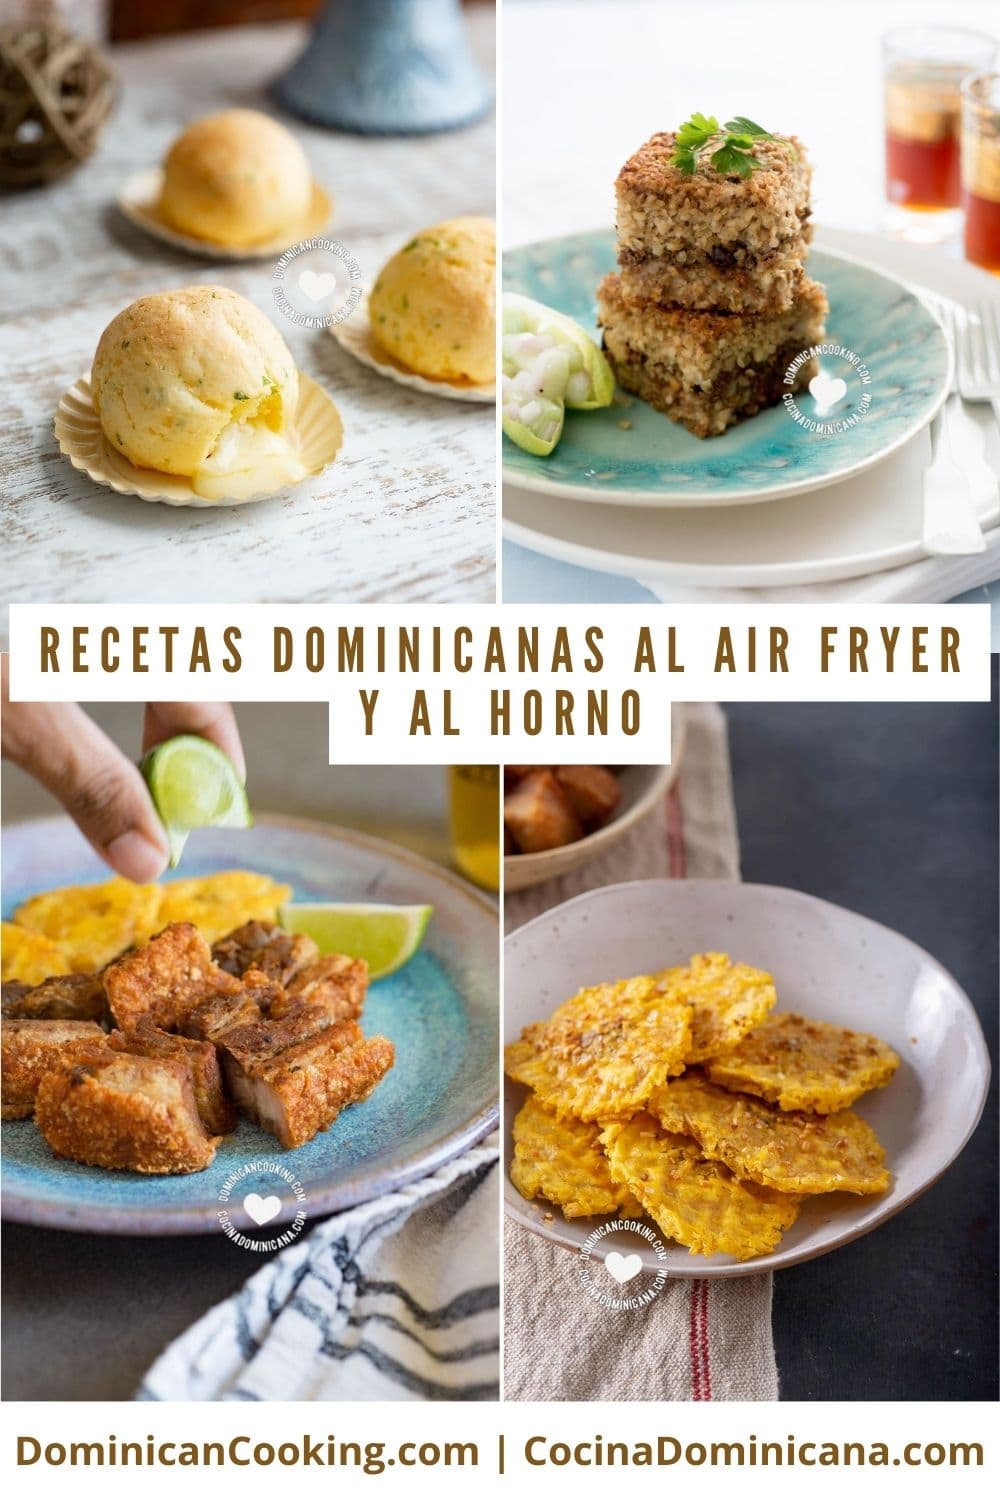 Recetas Dominicanas al air fryer y al horno.